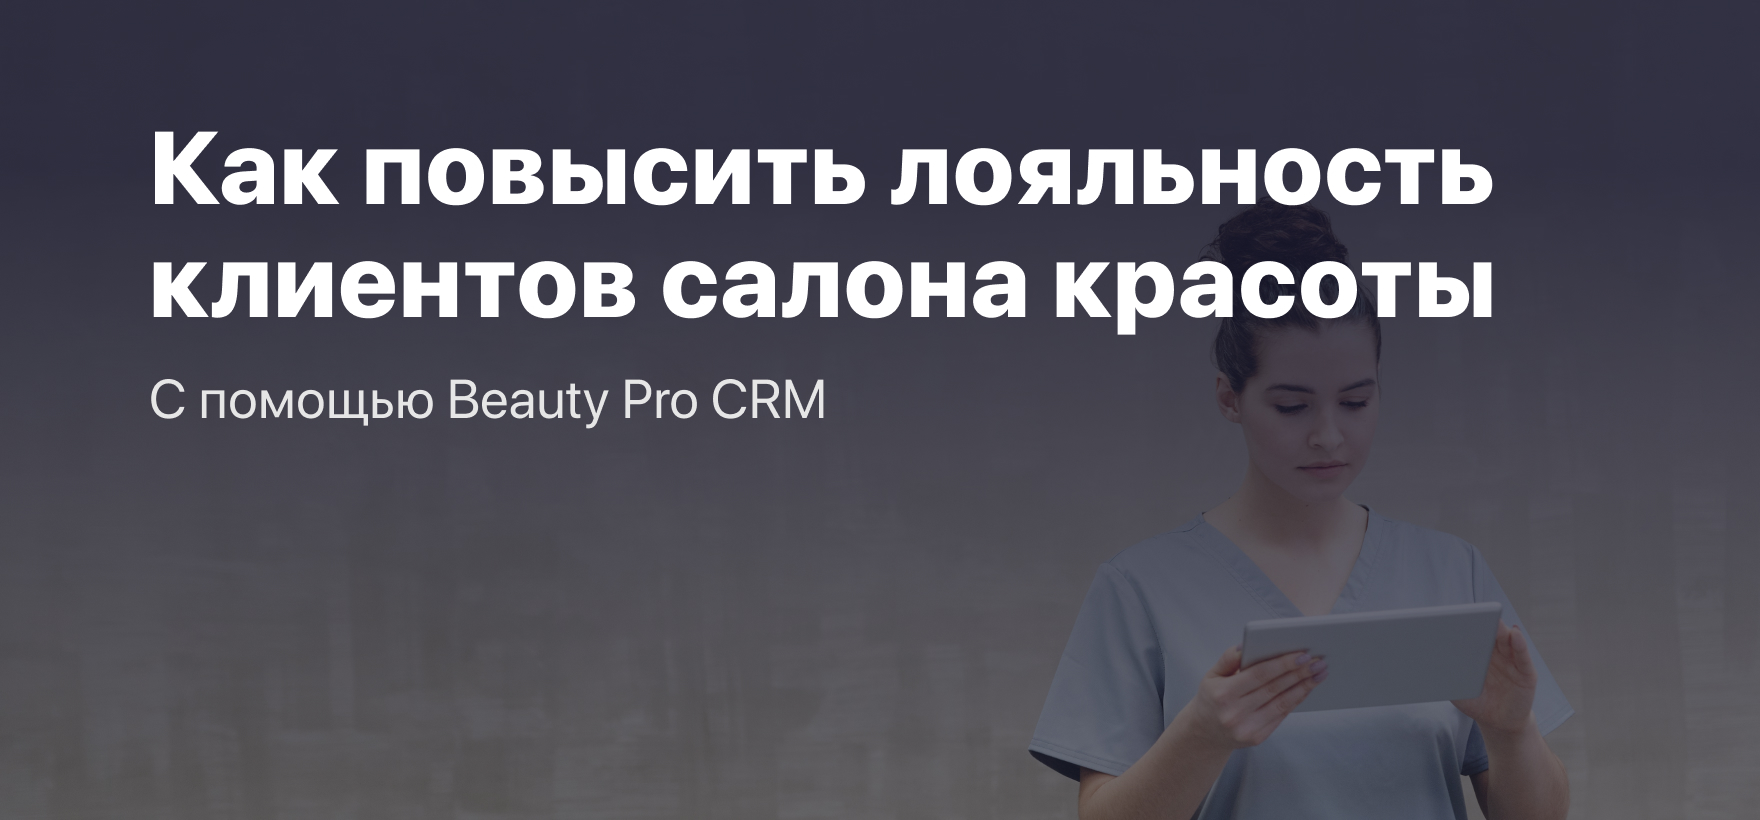 Як підвищити лояльність клієнтів салону краси за допомогою Beauty Pro CRM?